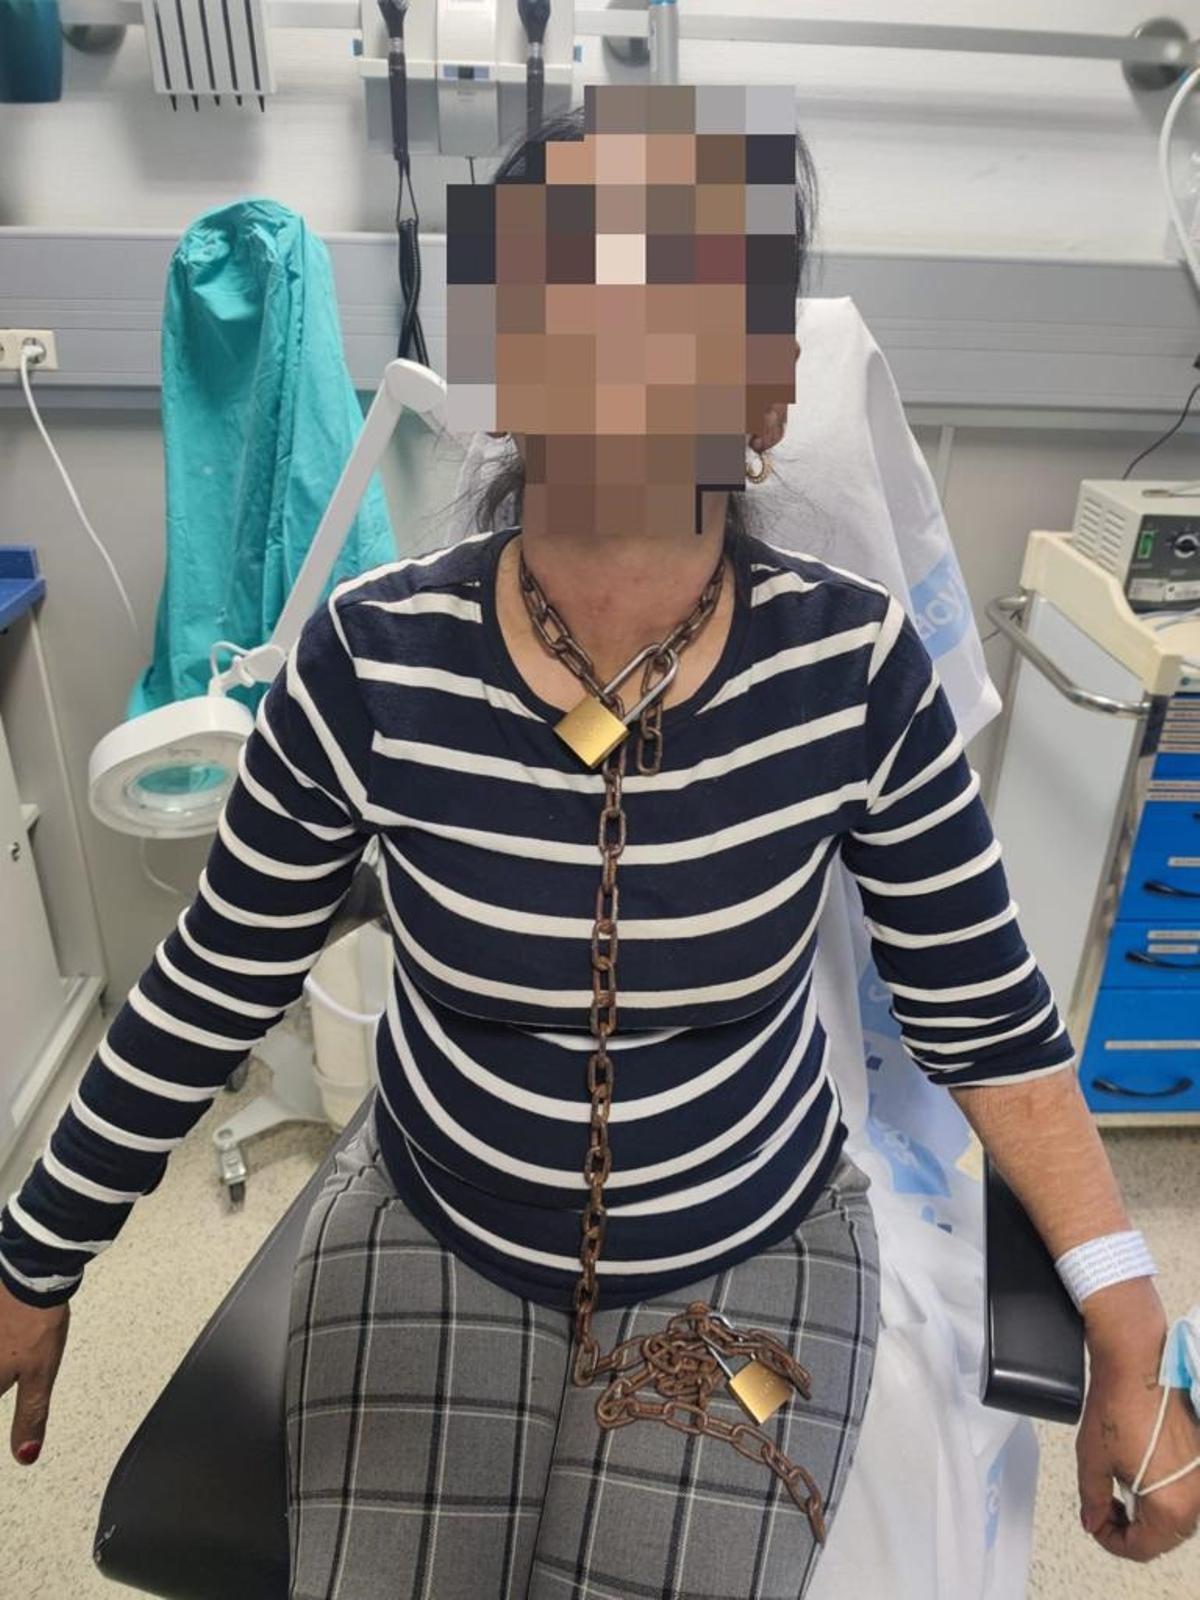 Una imagen de la víctima con encadenada, tras acudir al hospital el pasado lunes.